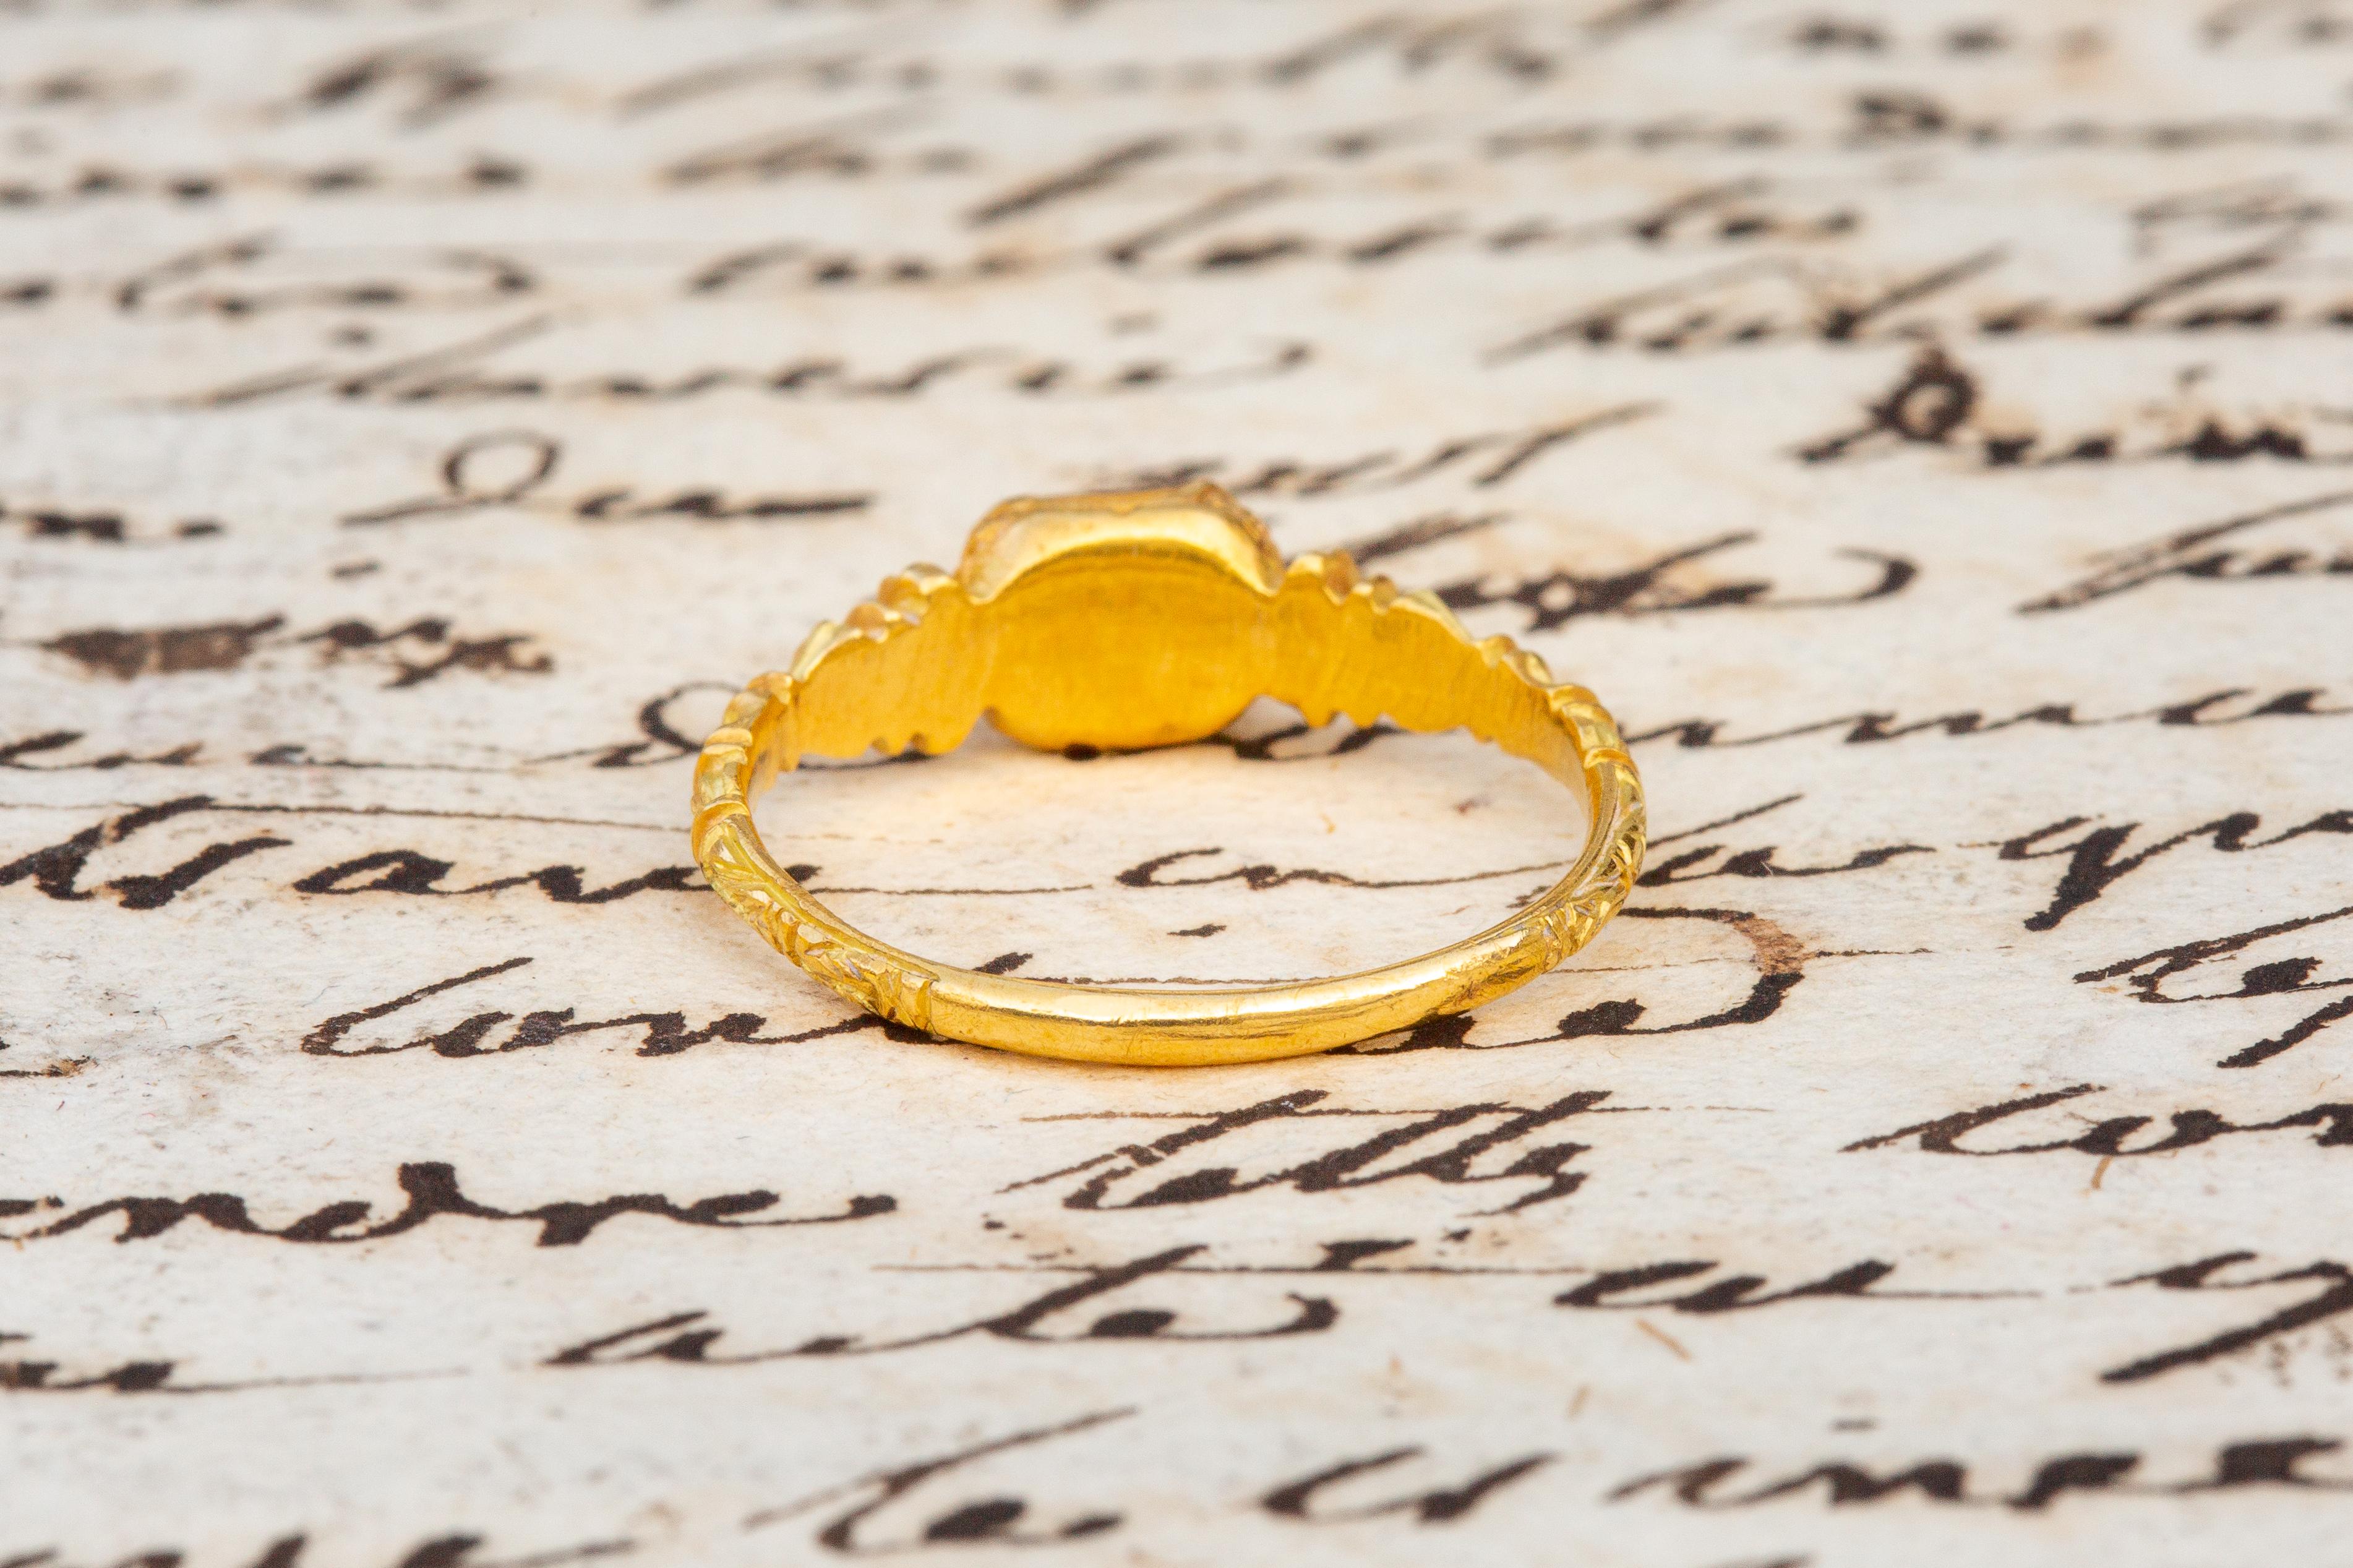 16th century rings